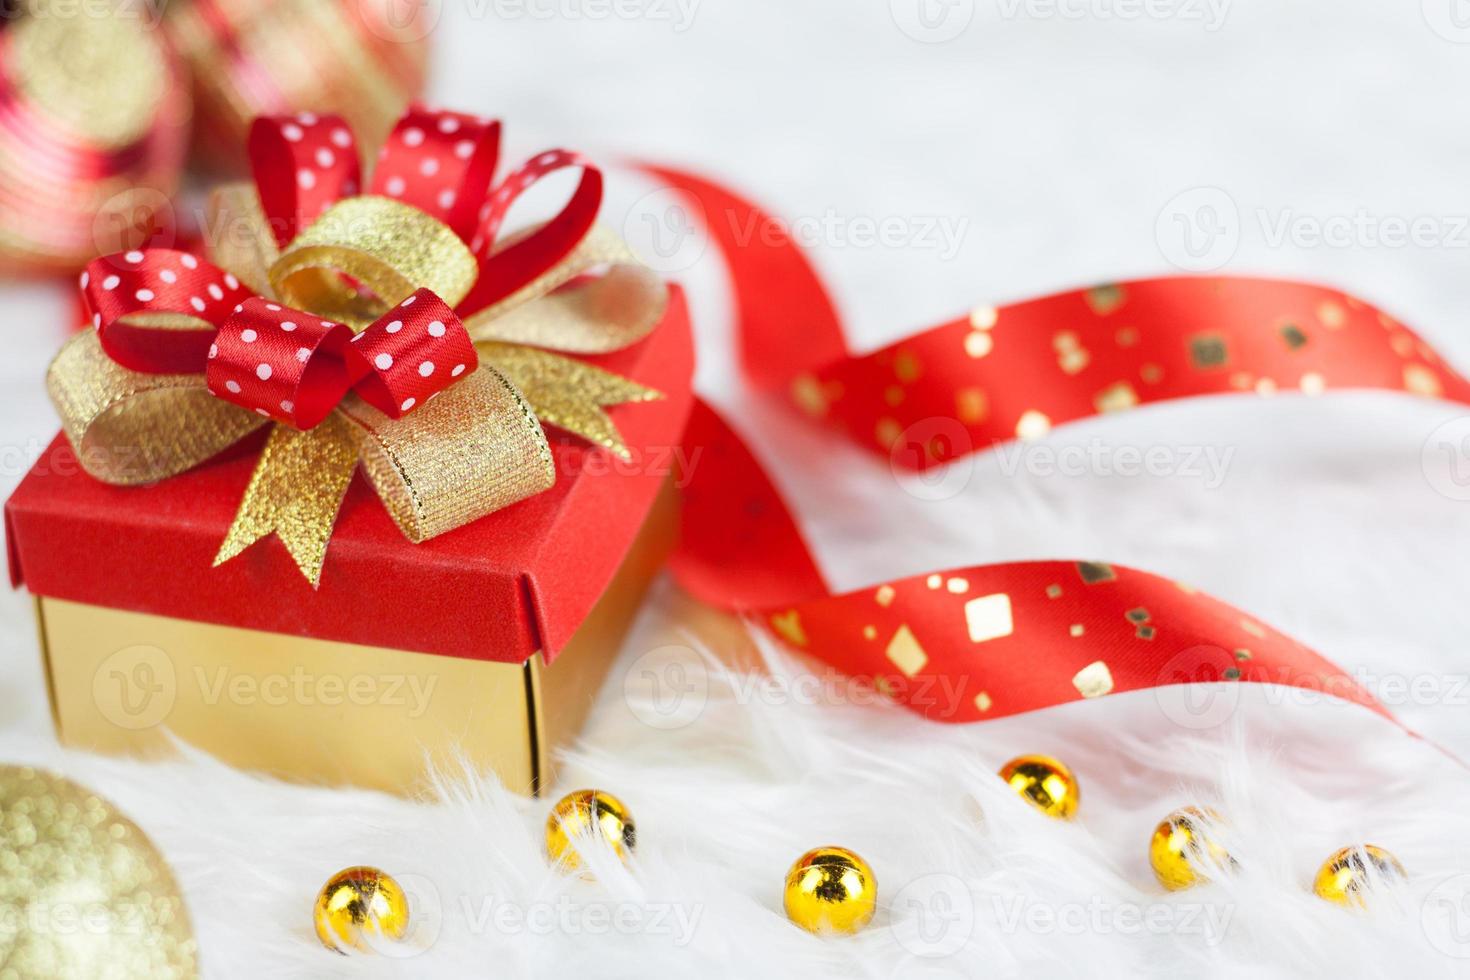 merry christmas gouden geschenkdoos met rode linten op witte nerts katoen background.select focus en kopieer ruimte voor uw tekst.kerst en valentijn concept foto